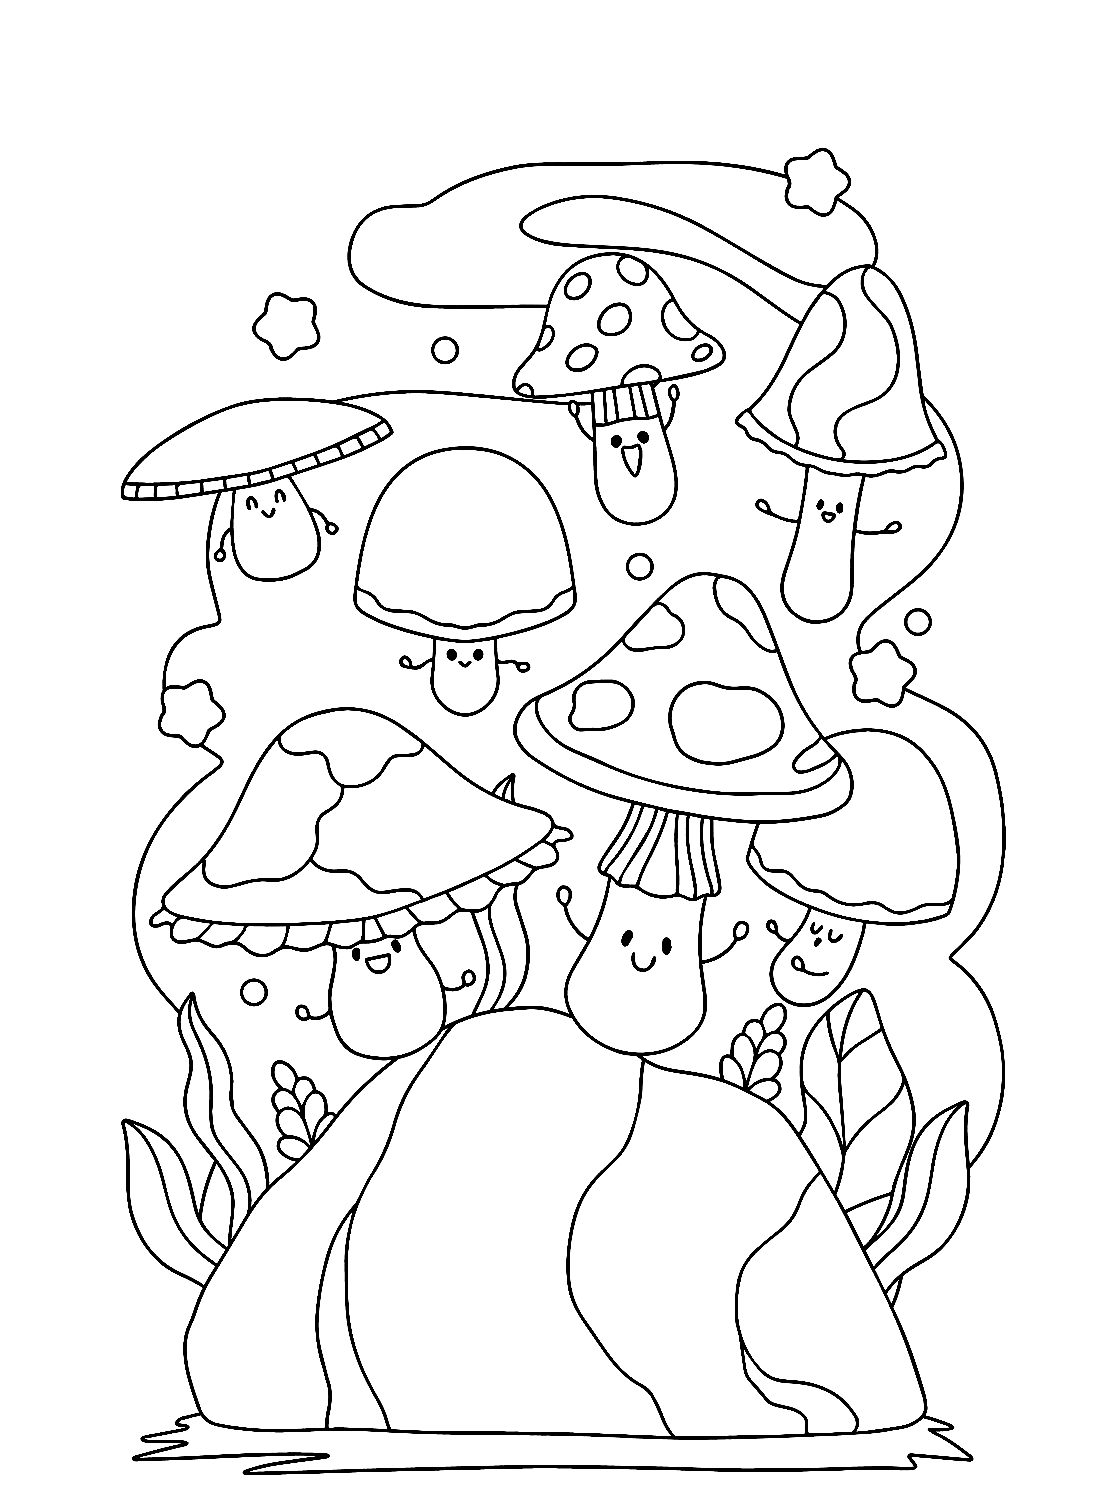 Распечатки очаровательных грибов из журнала Mushroom